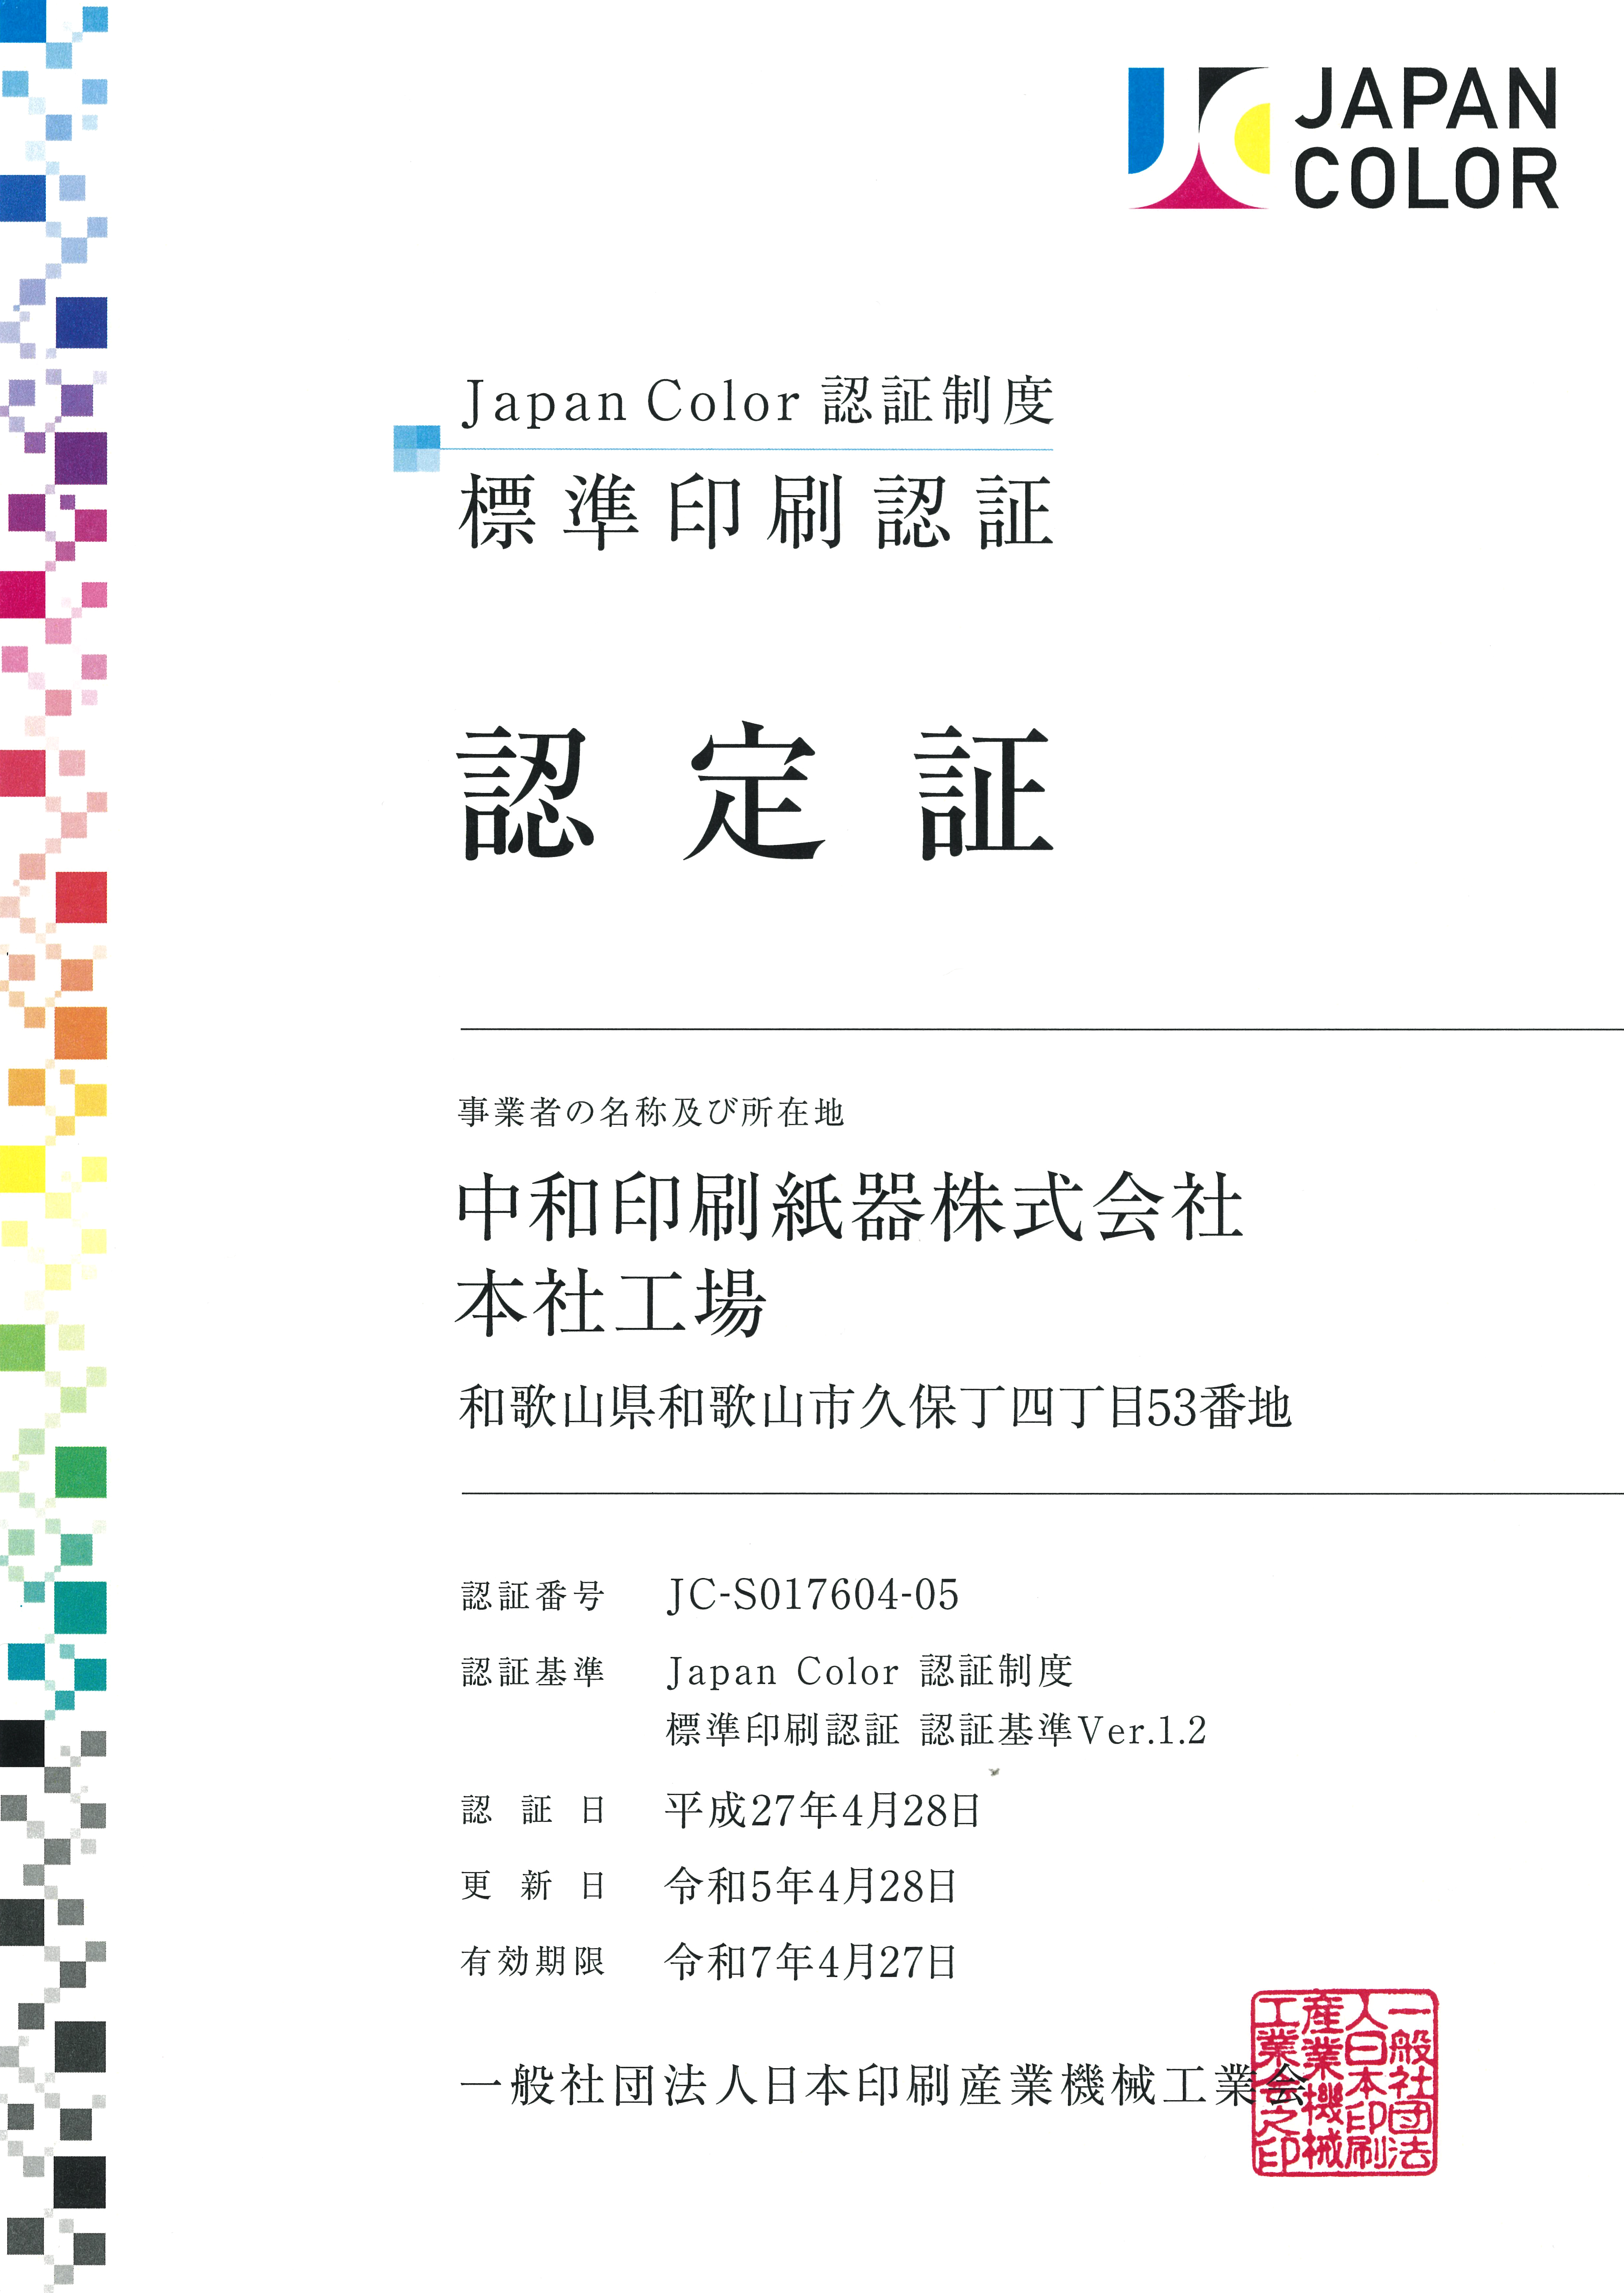 Japan Color 標準印刷認証 登録証